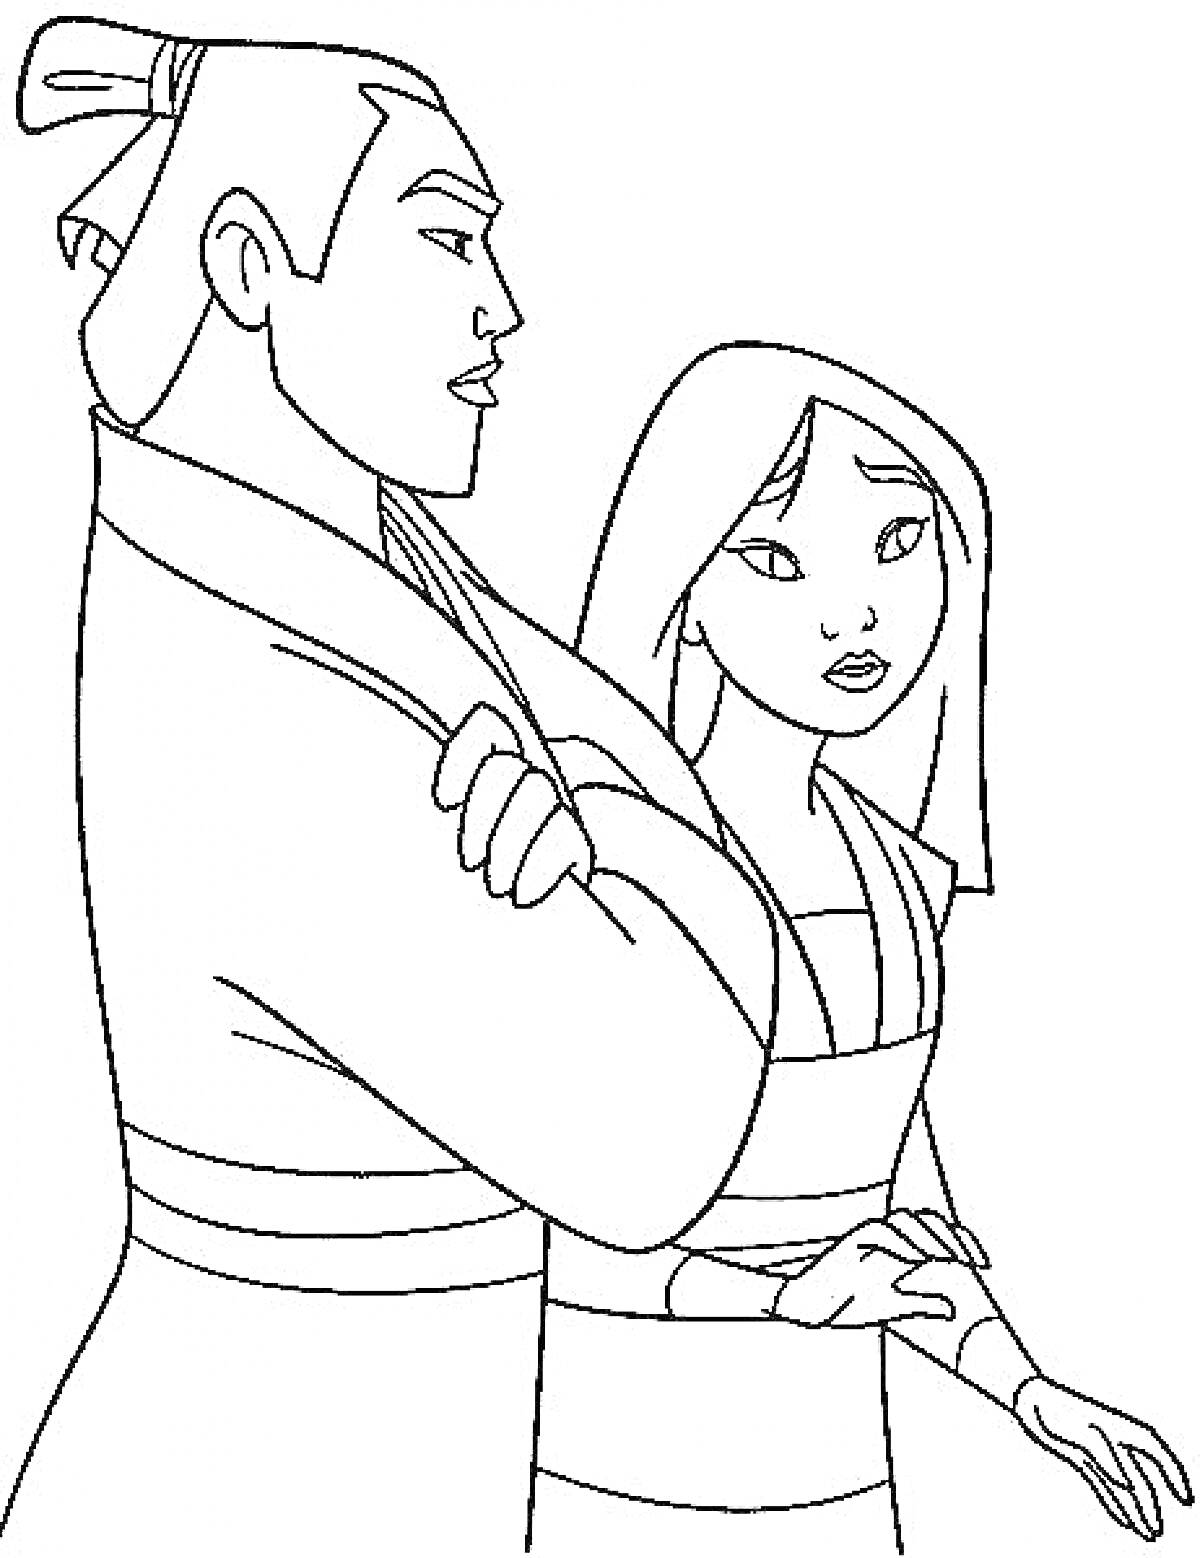 Раскраска Два персонажа из Мулан, мужчина и женщина в традиционной китайской одежде